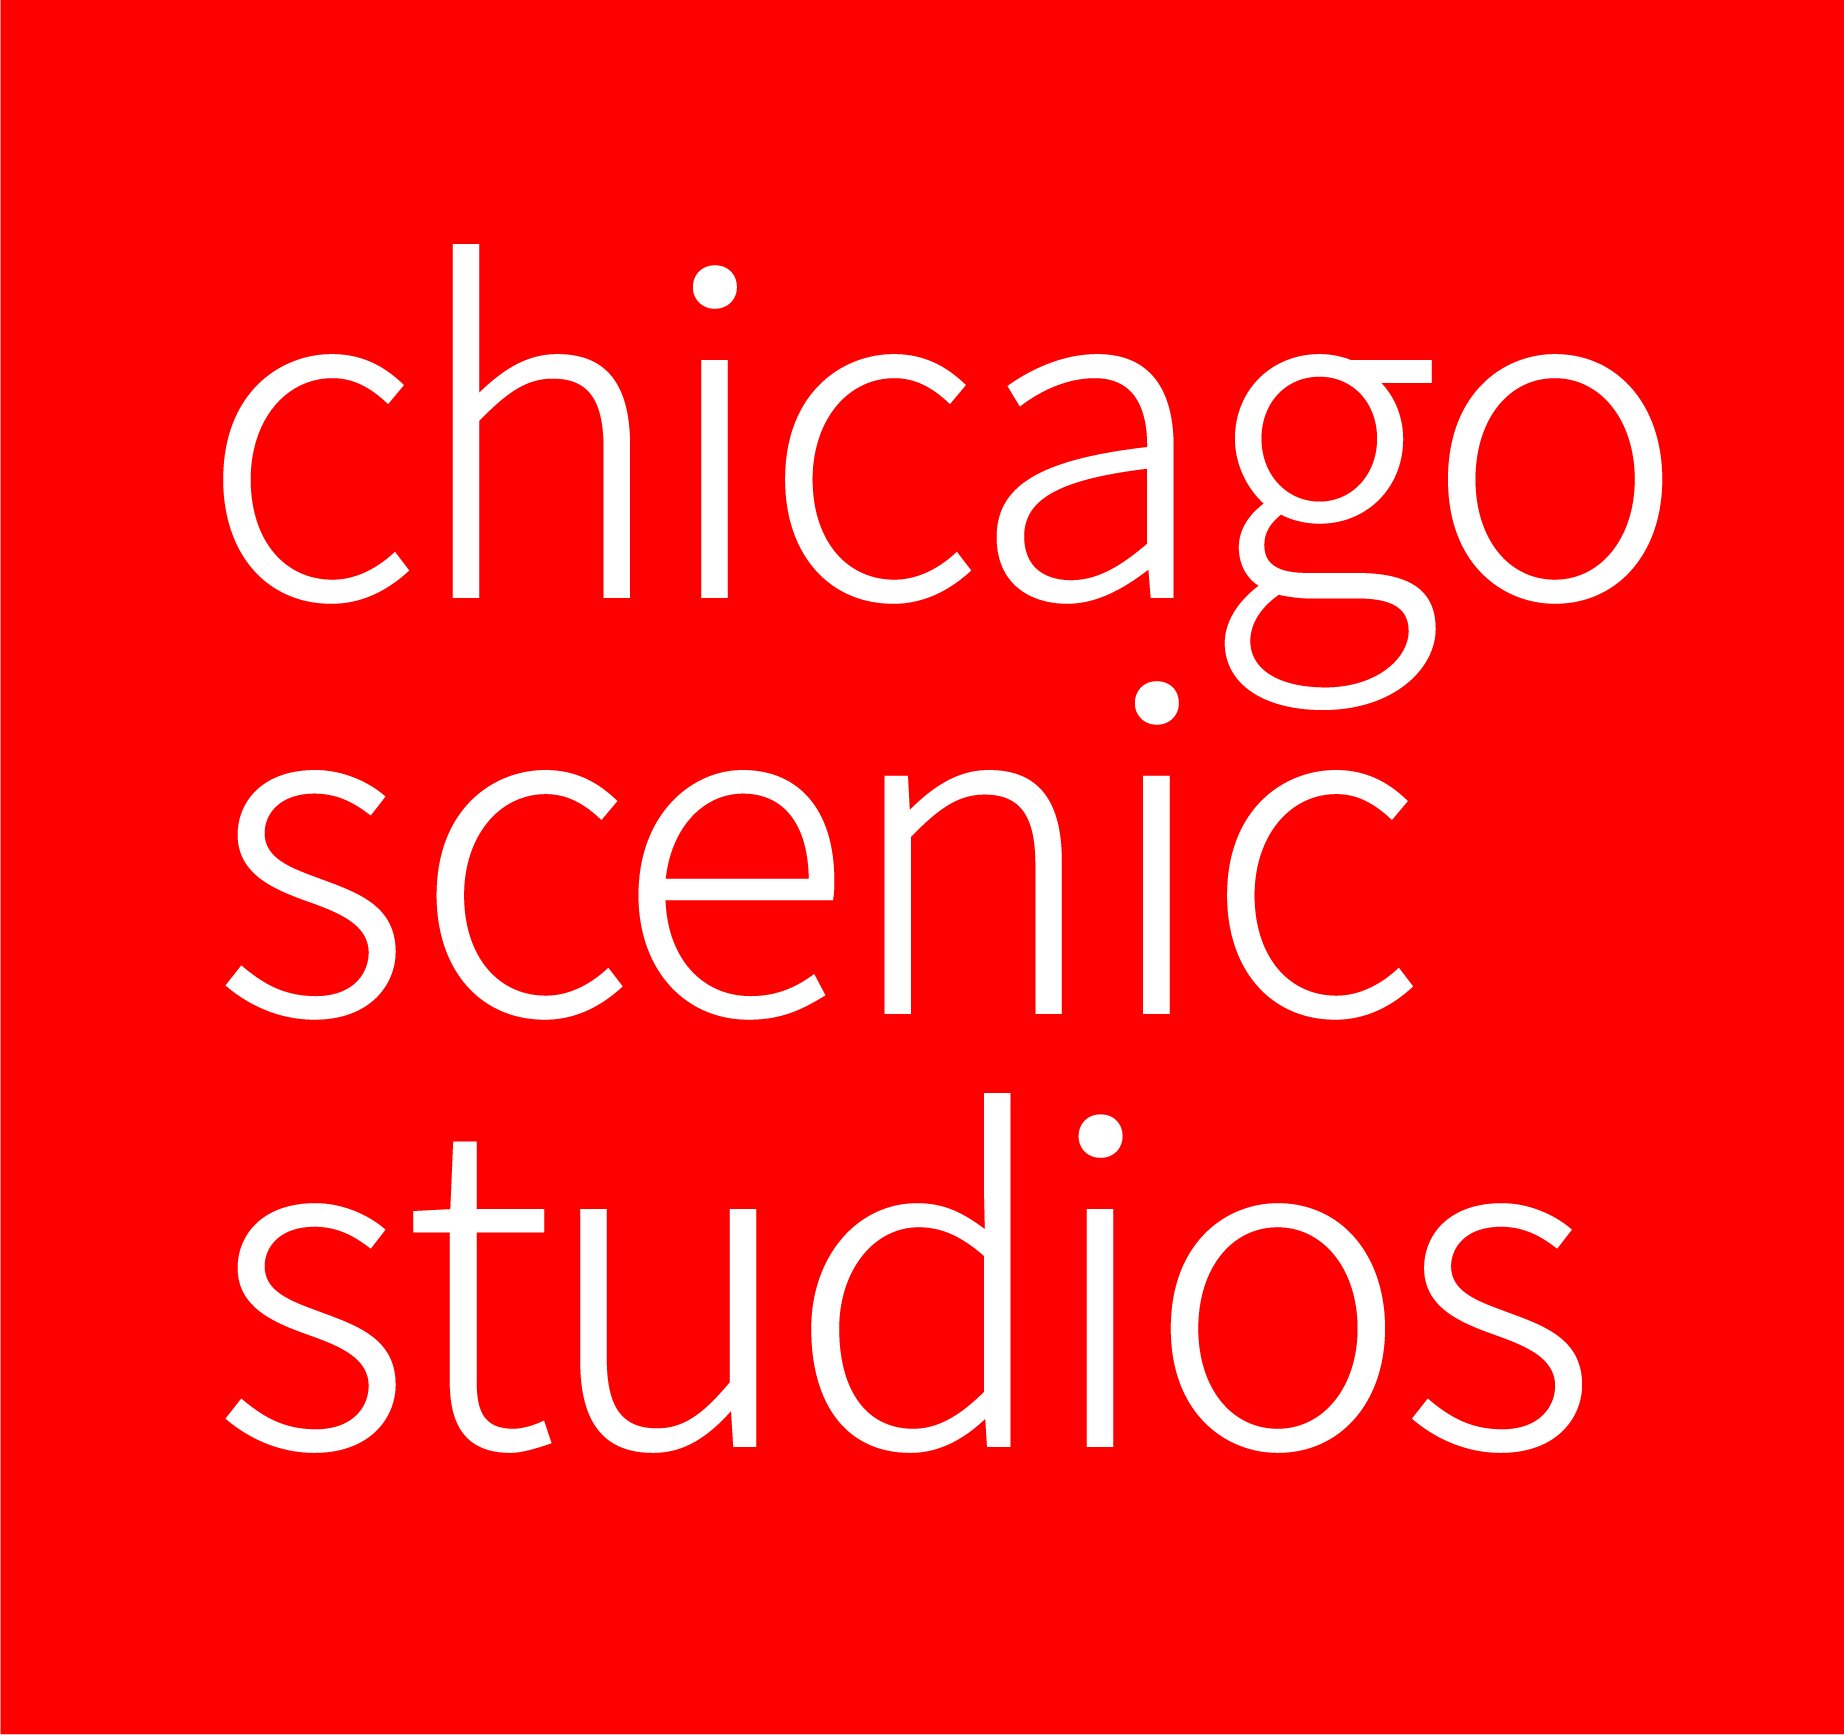 Chicago+Scenic+Studios%2C+Inc.jpg